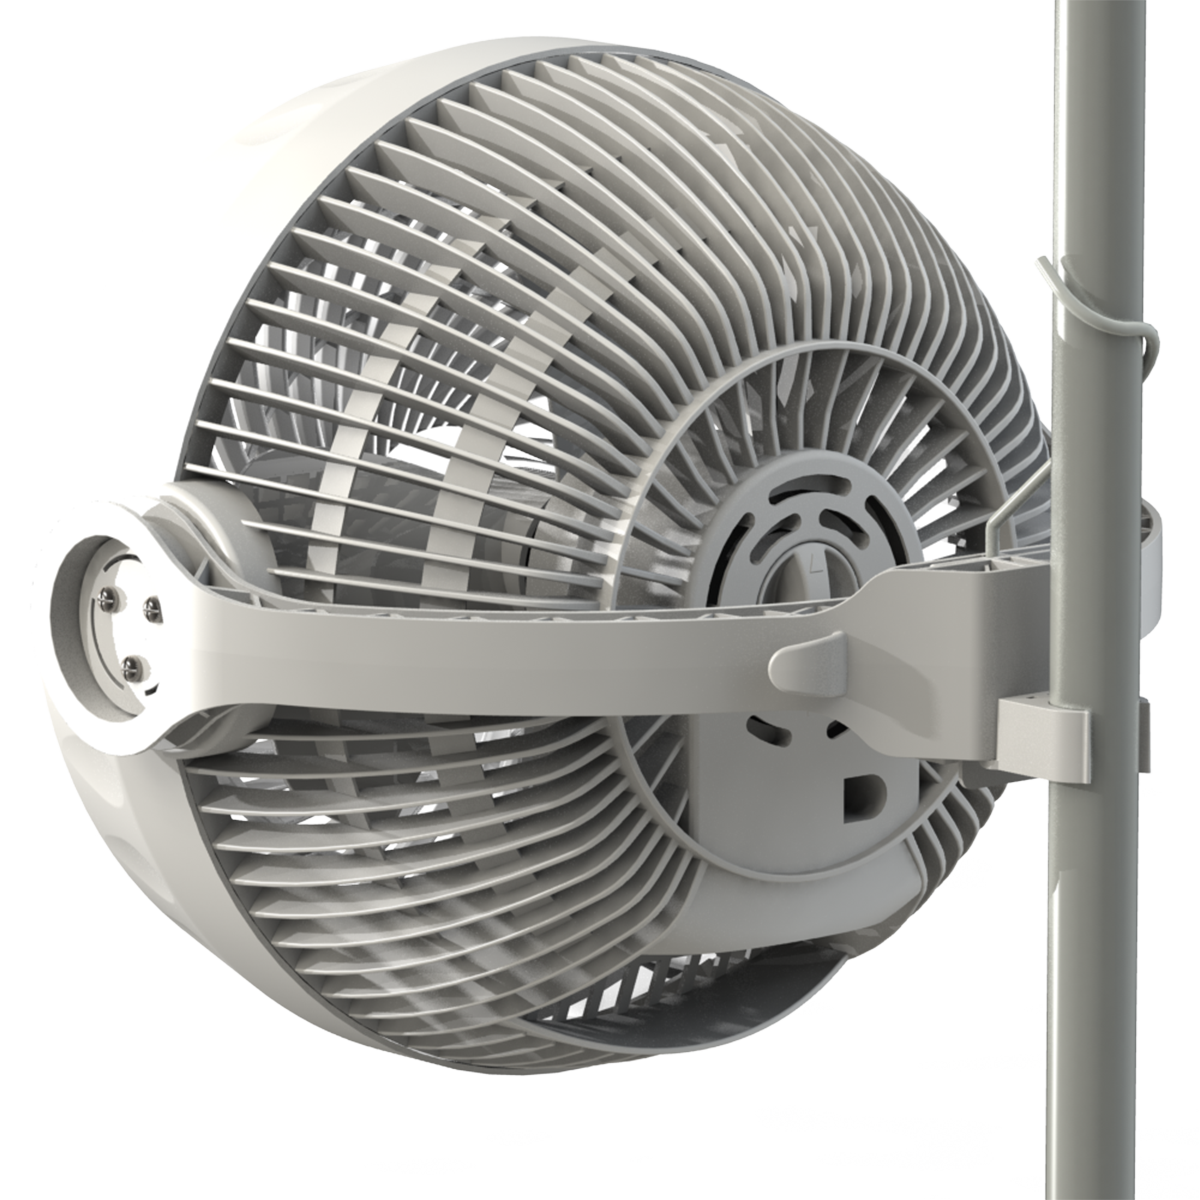 Можно купить вентилятор. Вентилятор Monkey Fan 30 Вт. Вентилятор Secret Jardin Monkey Fan 30. Вентилятор Monkey Fan 16 w. Вентилятор Monkey Fan, 16 w (двухскоростной.